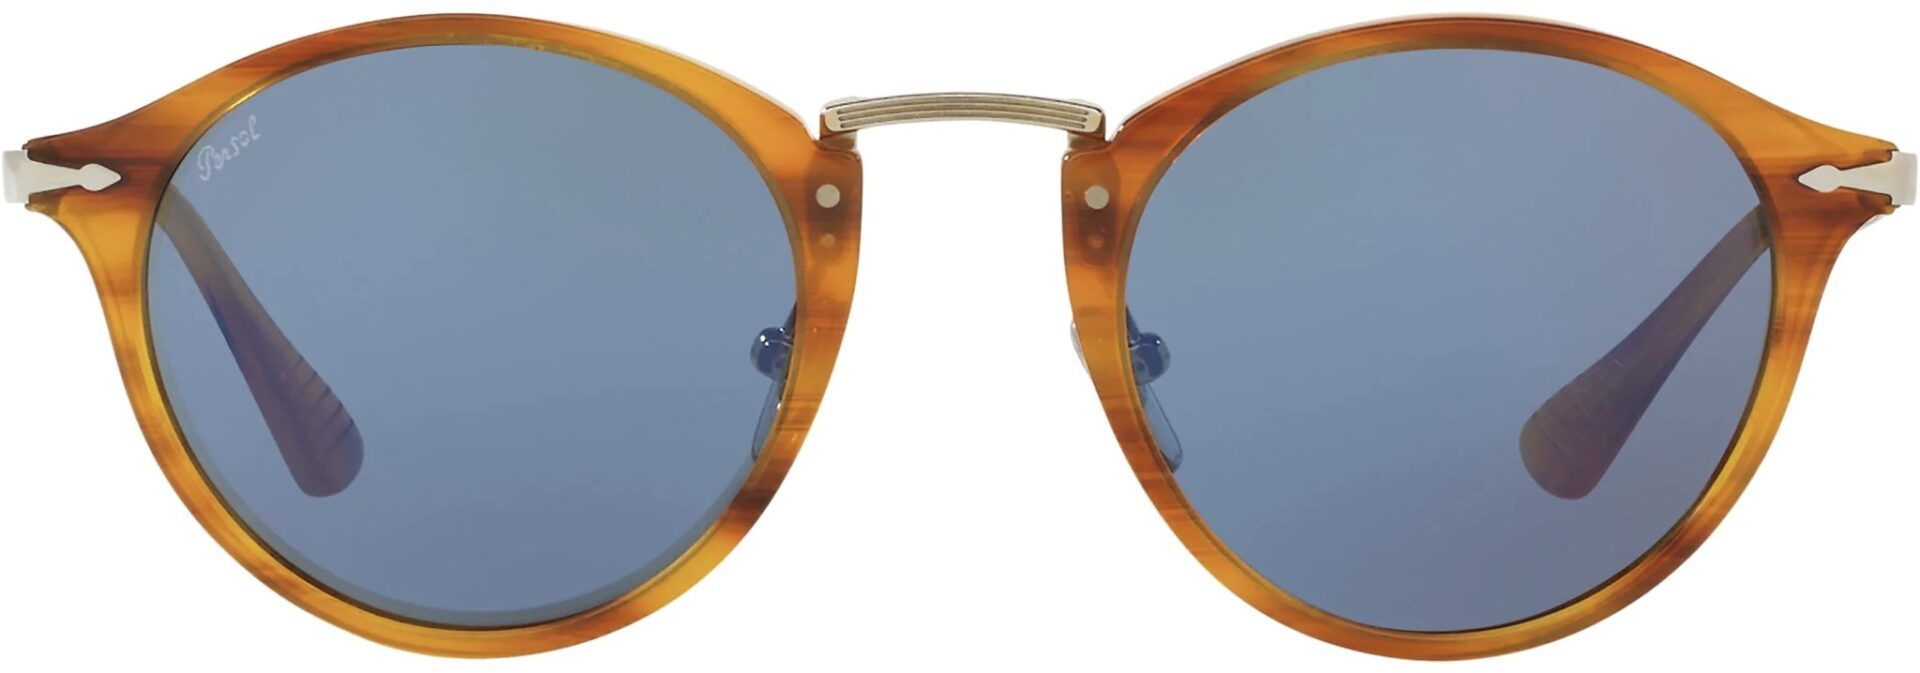 Sunglasses (PO3166 Striped Brown) | style